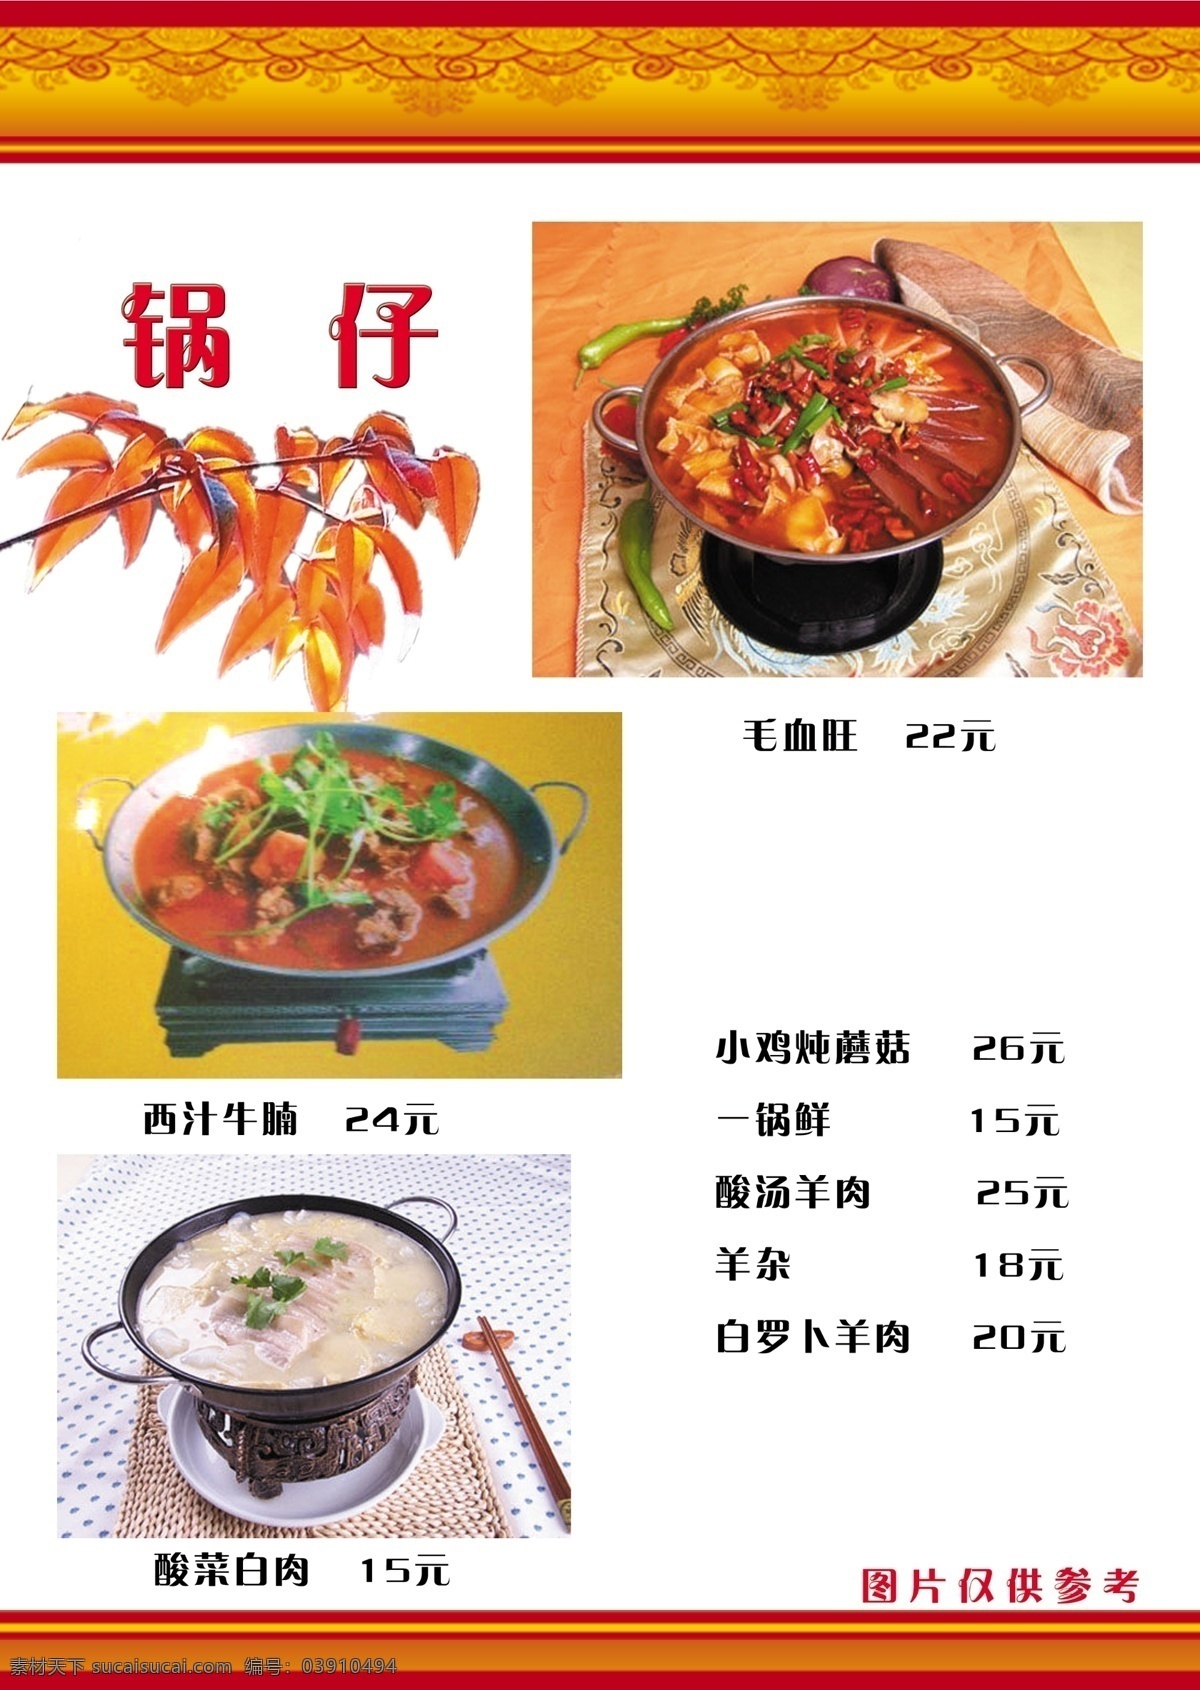 瑞 兆 饺 香阁 菜谱 食品餐饮 菜单菜谱 分层psd 平面广告 海报 设计素材 平面模板 psd源文件 白色